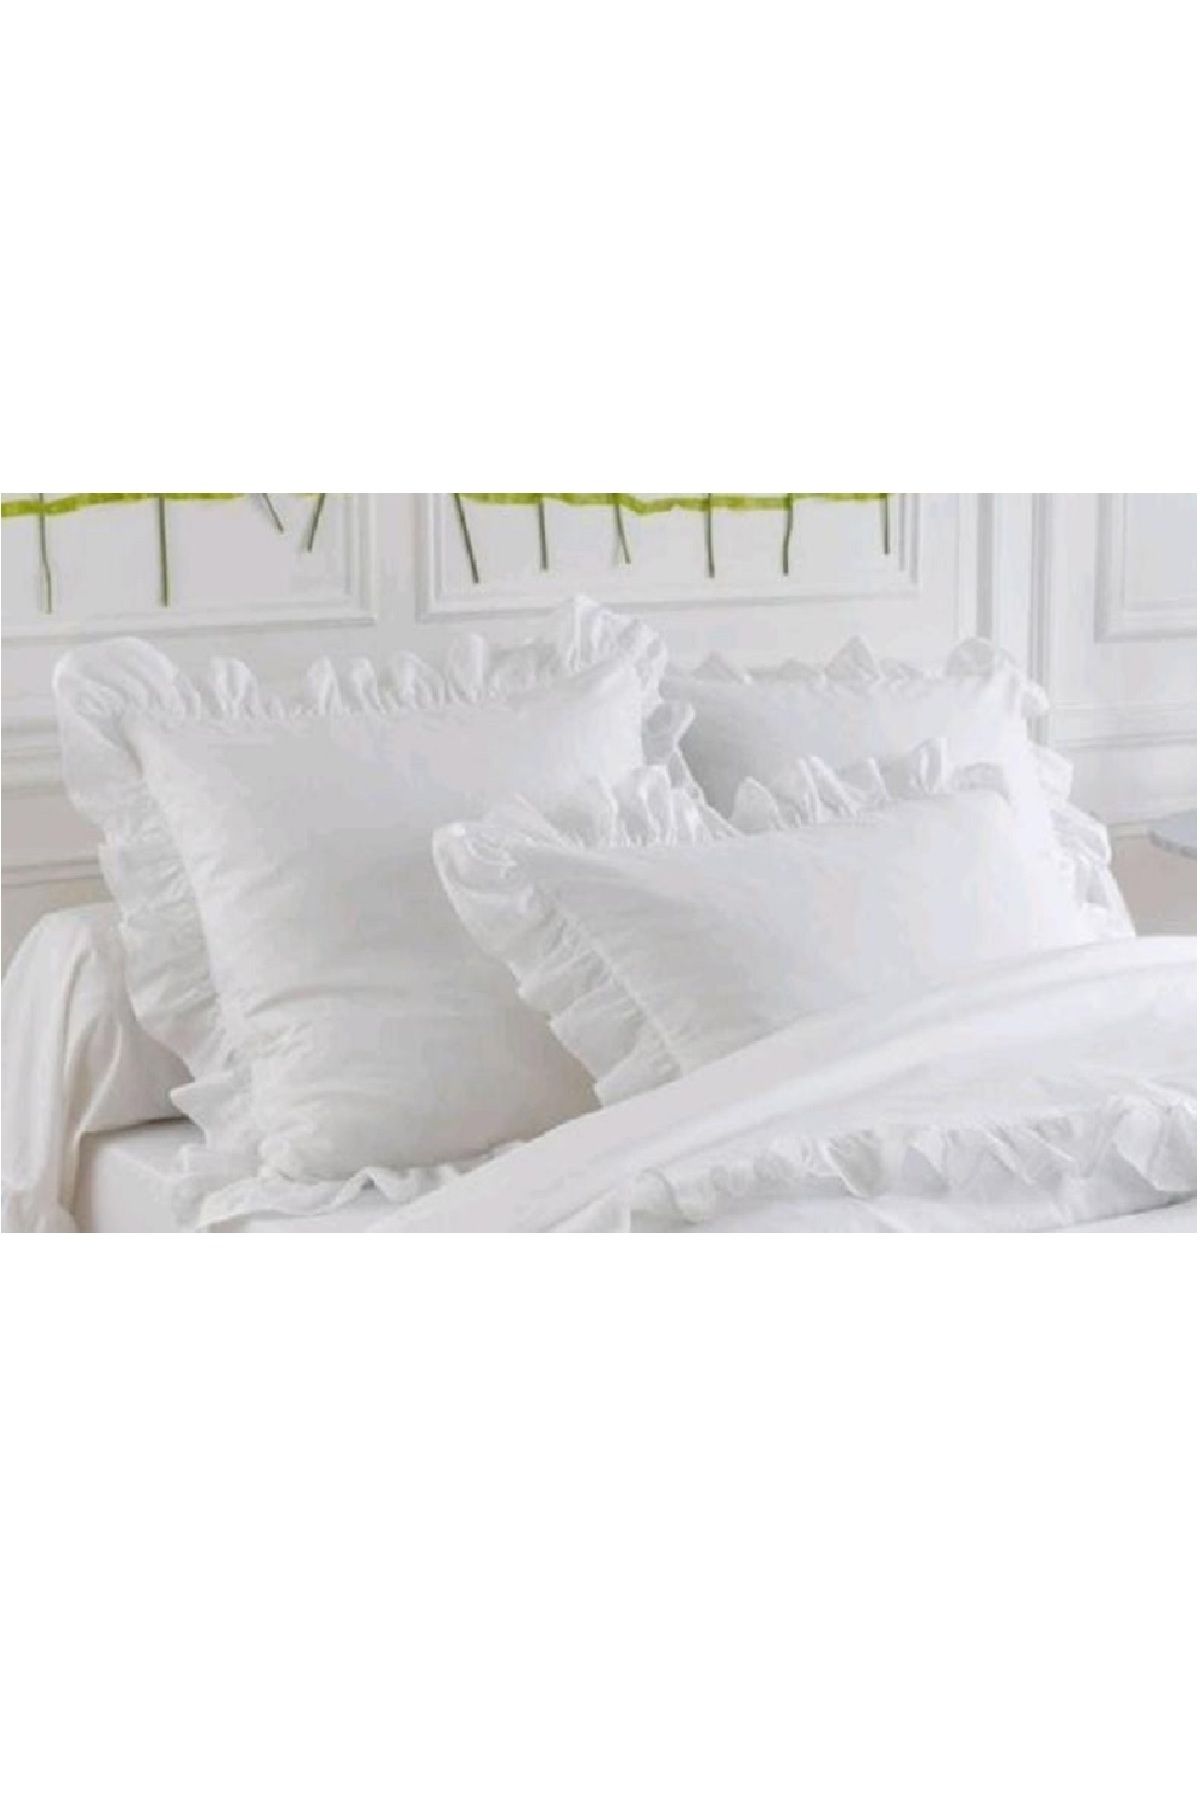 makiteks Yüzde yüz pamuklu fırfır süs dikişli ikili yastık kılıf seti beyaz